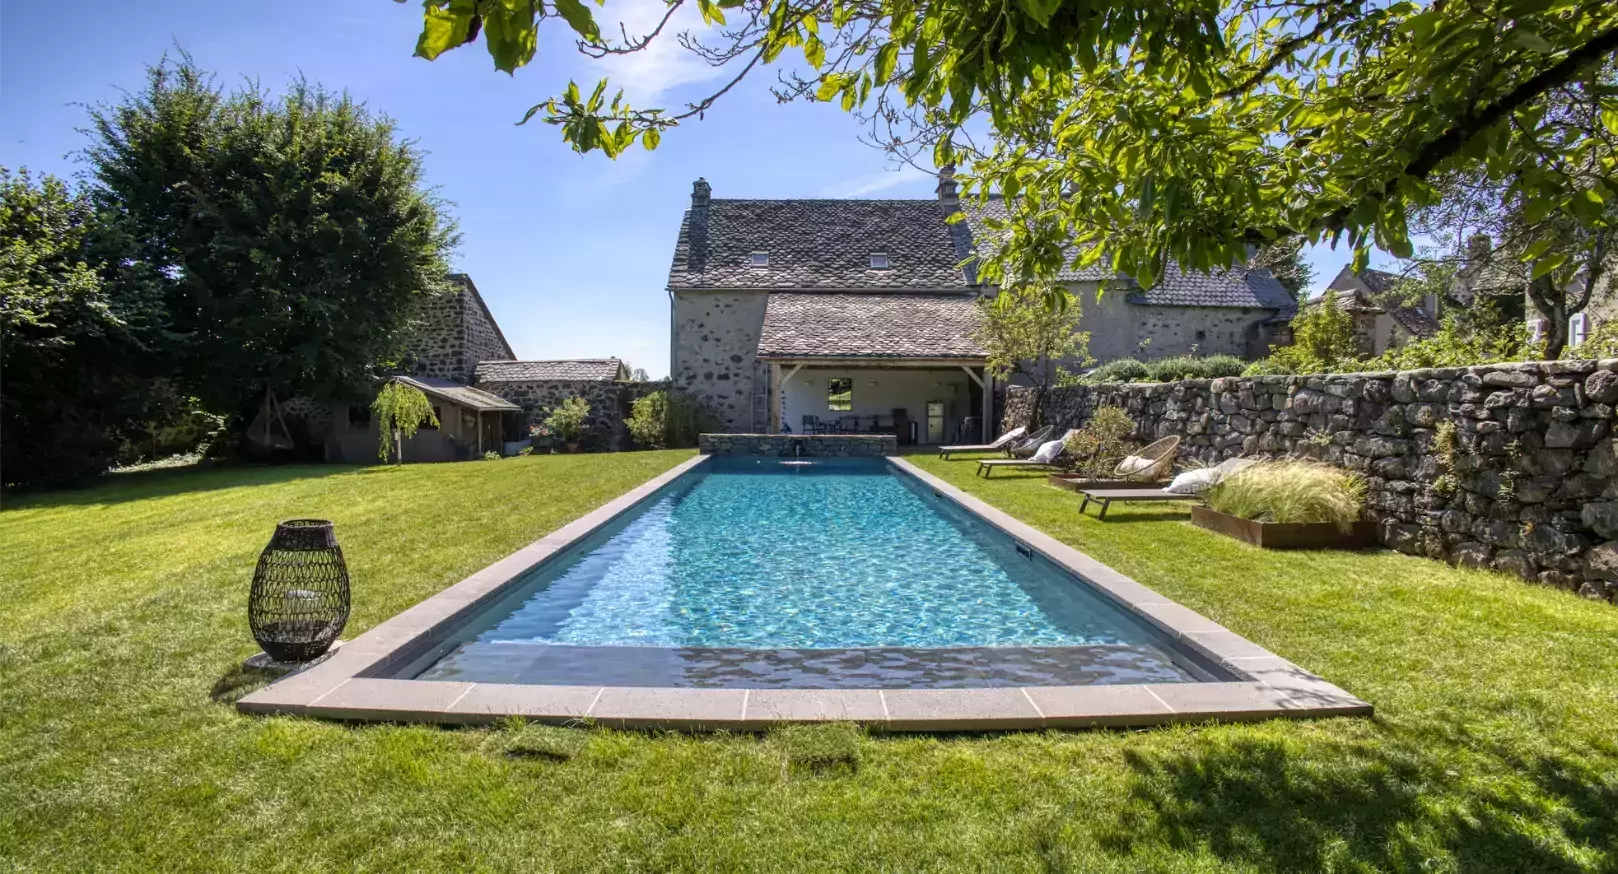 Édification d'une piste de natation dans le jardin d'un logis, au sein d'un des villages les plus charmants de France.